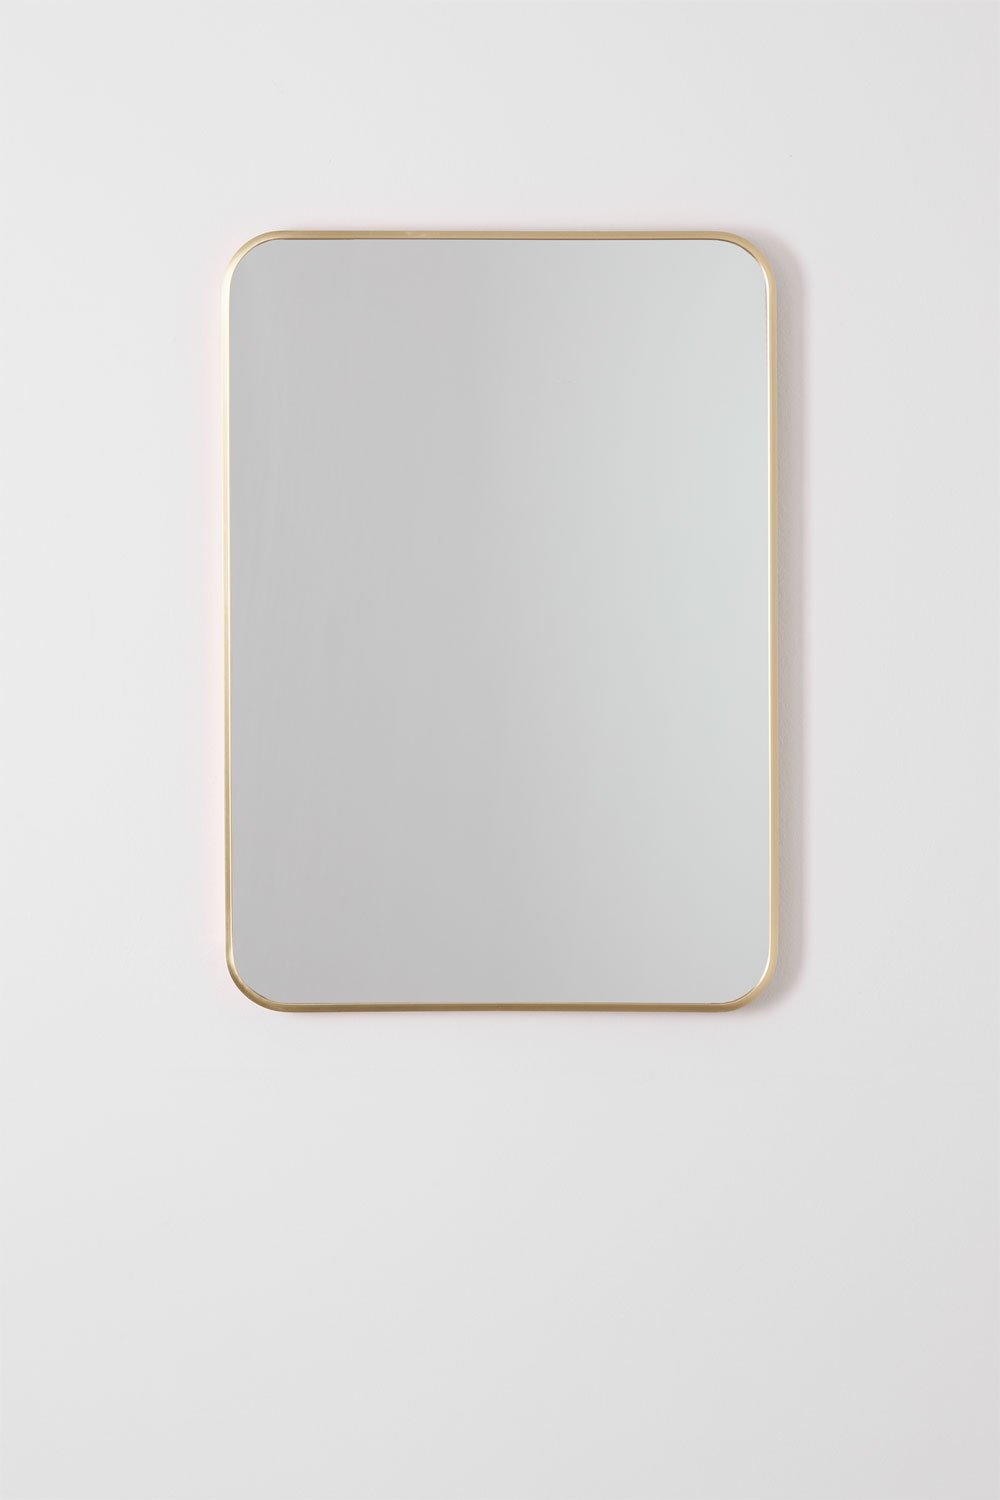 Specchio da parete rettangolare in alluminio (50x70 cm) Tuluise, immagine della galleria 1